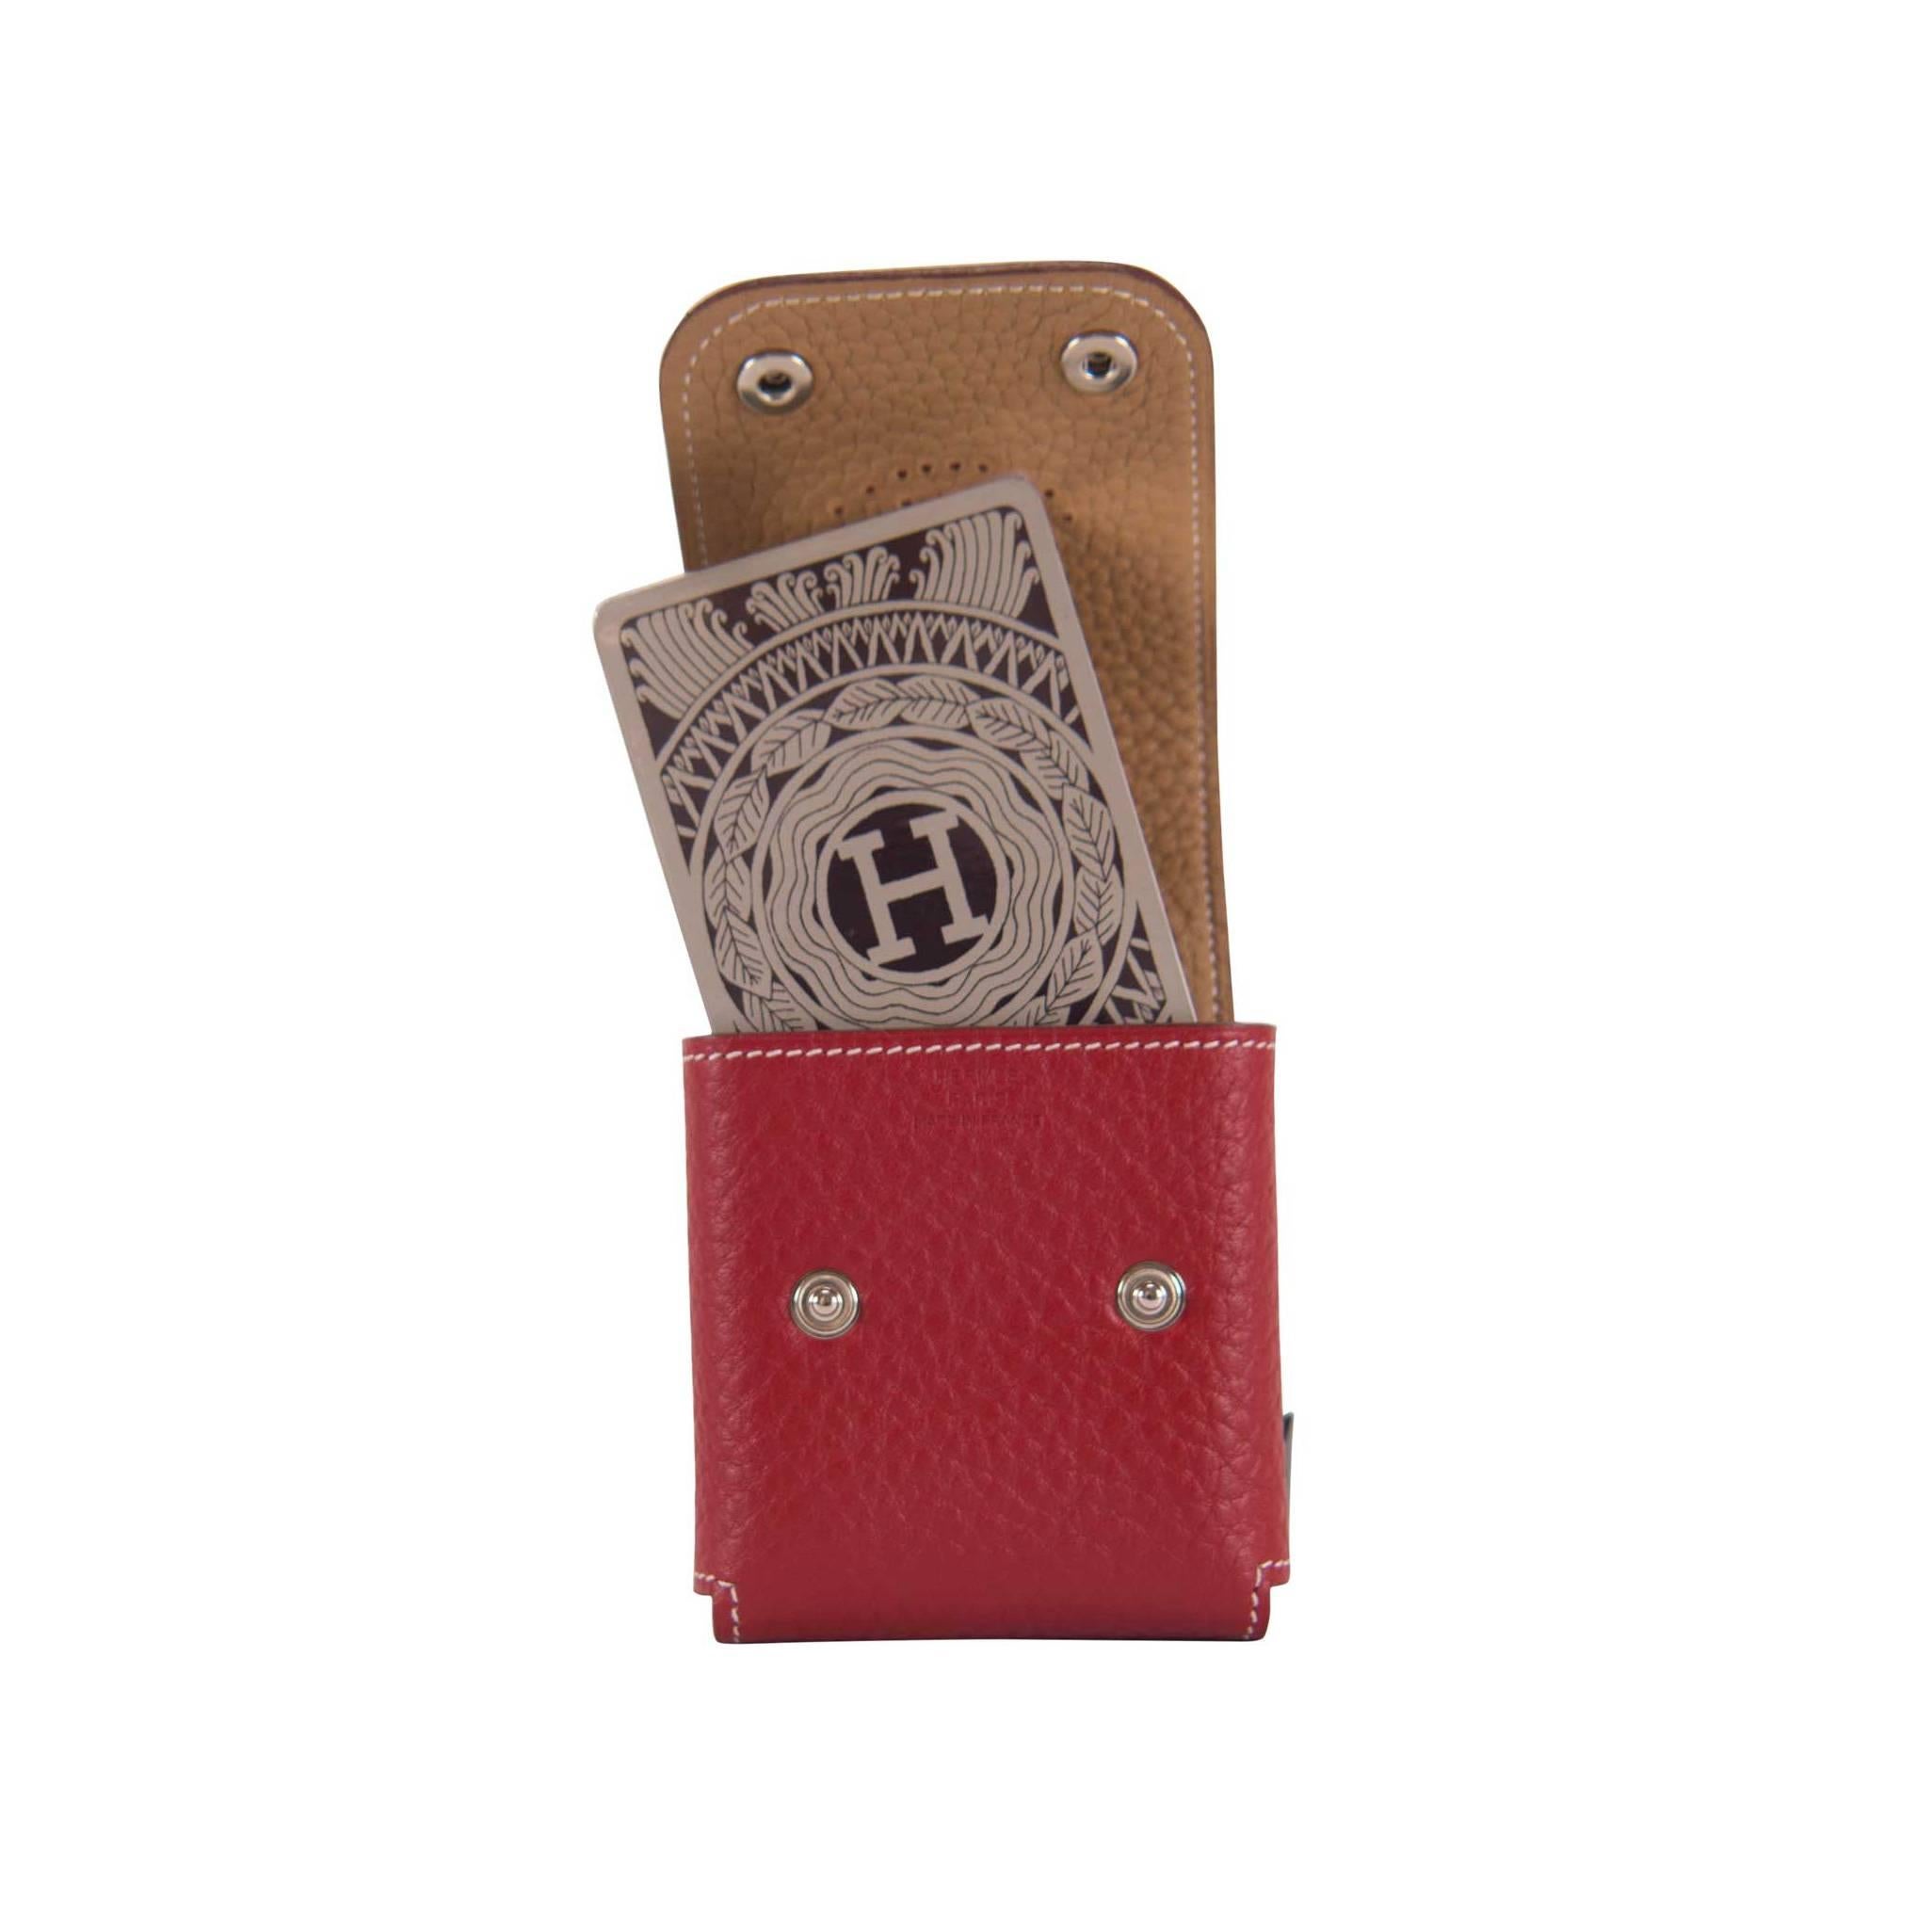 Hermes card case red felt and card set 2015